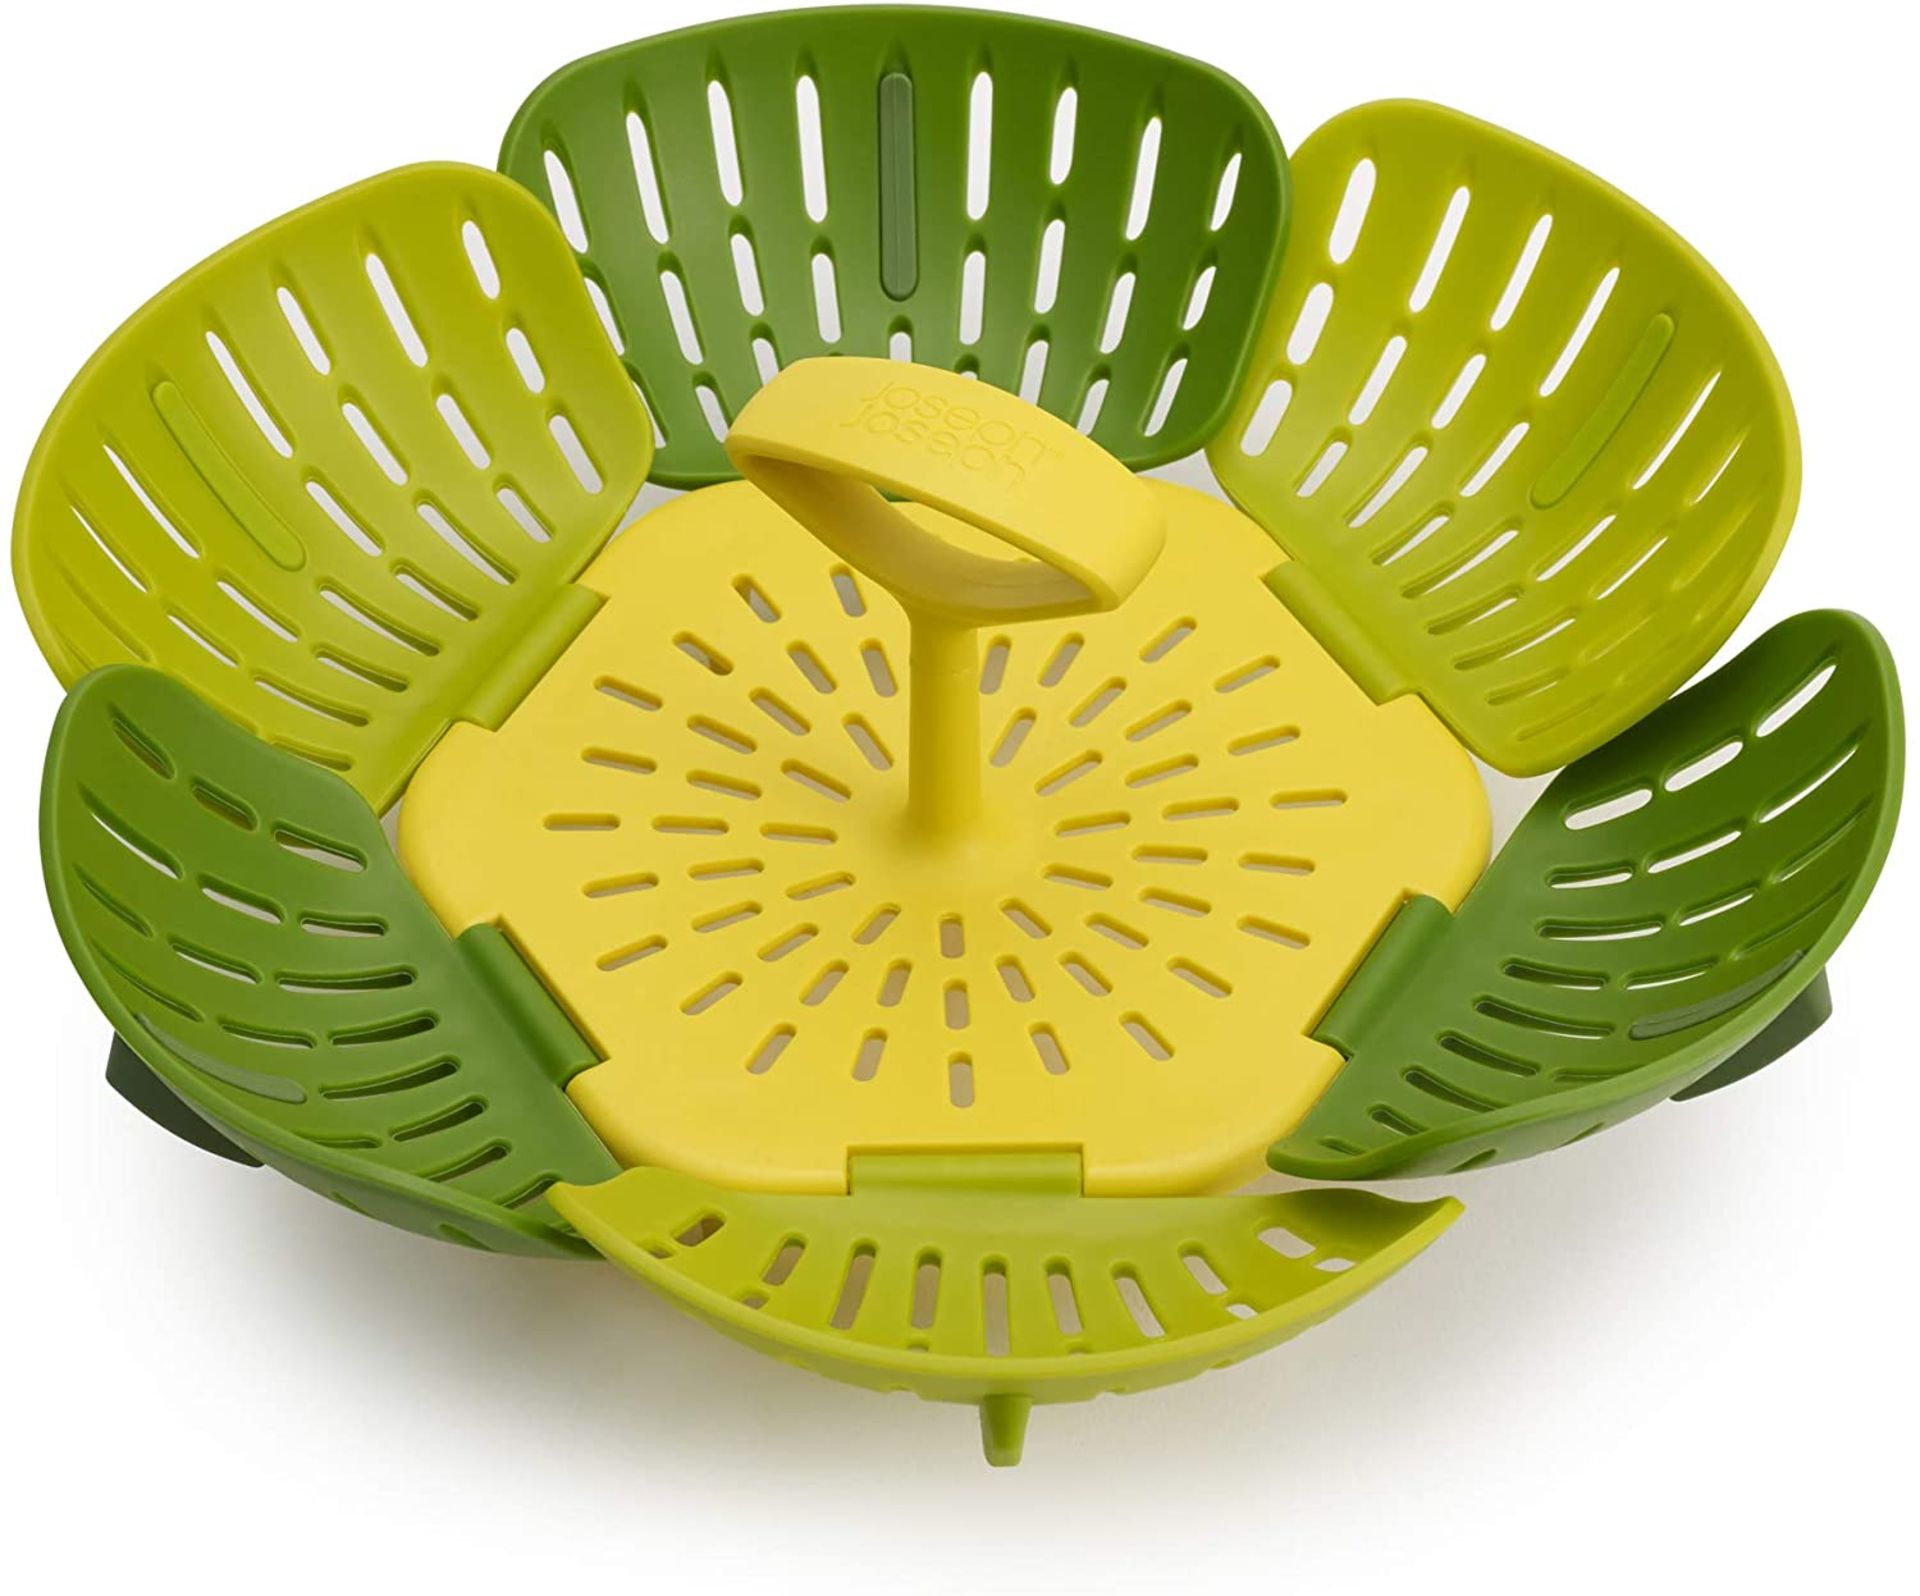 RRP - £10.00 Joseph Joseph 45030 Bloom Folding Steamer Basket for Vegetables - Green